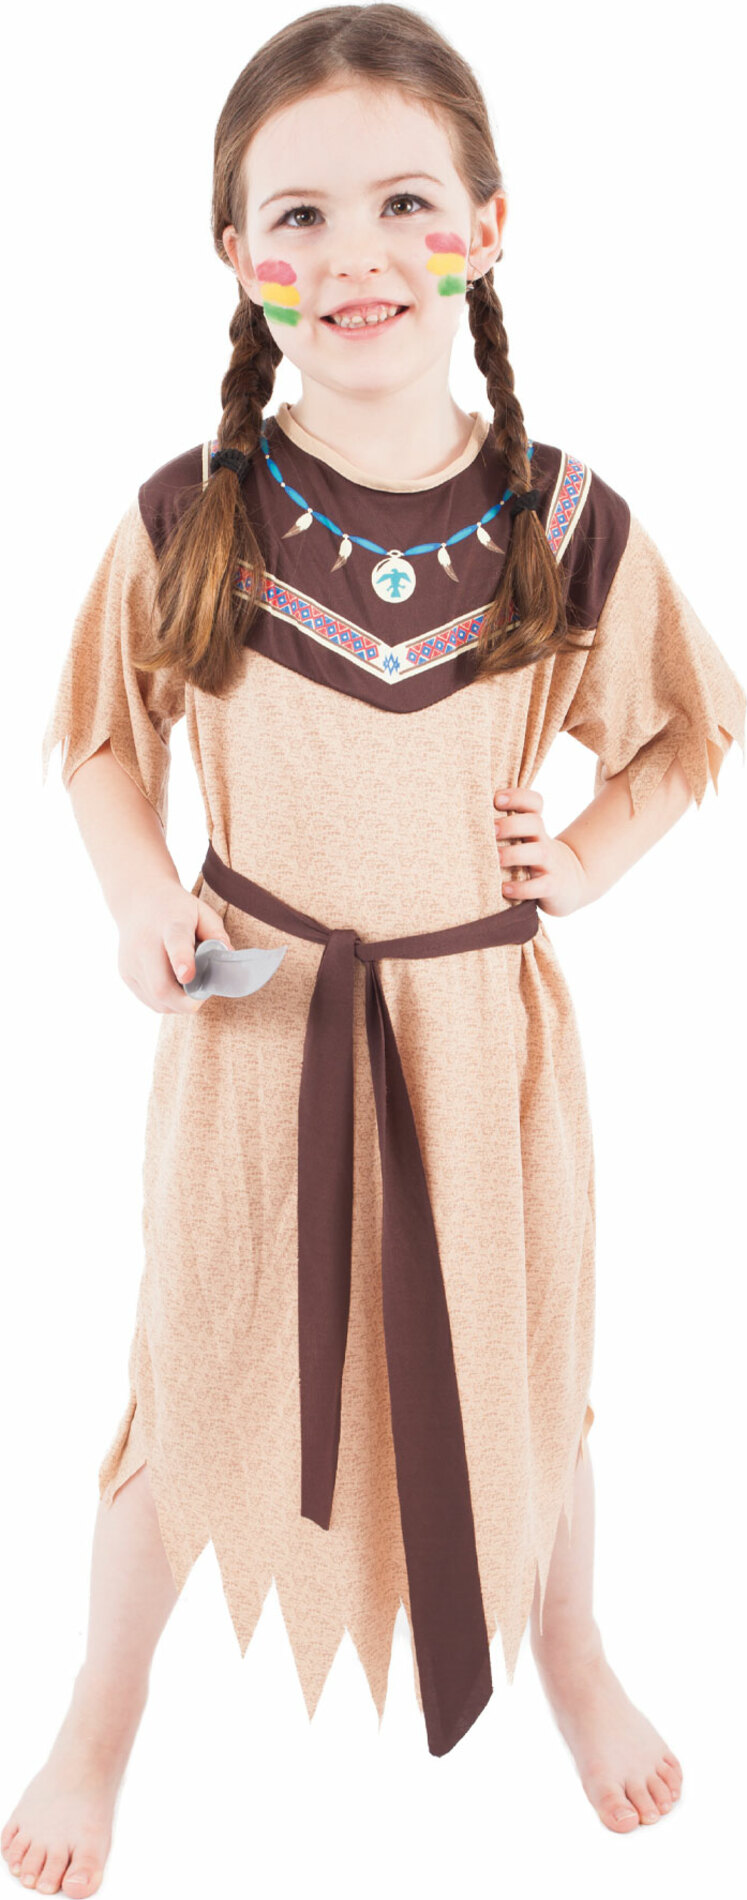 Dětský kostým indiánka s páskem (M)